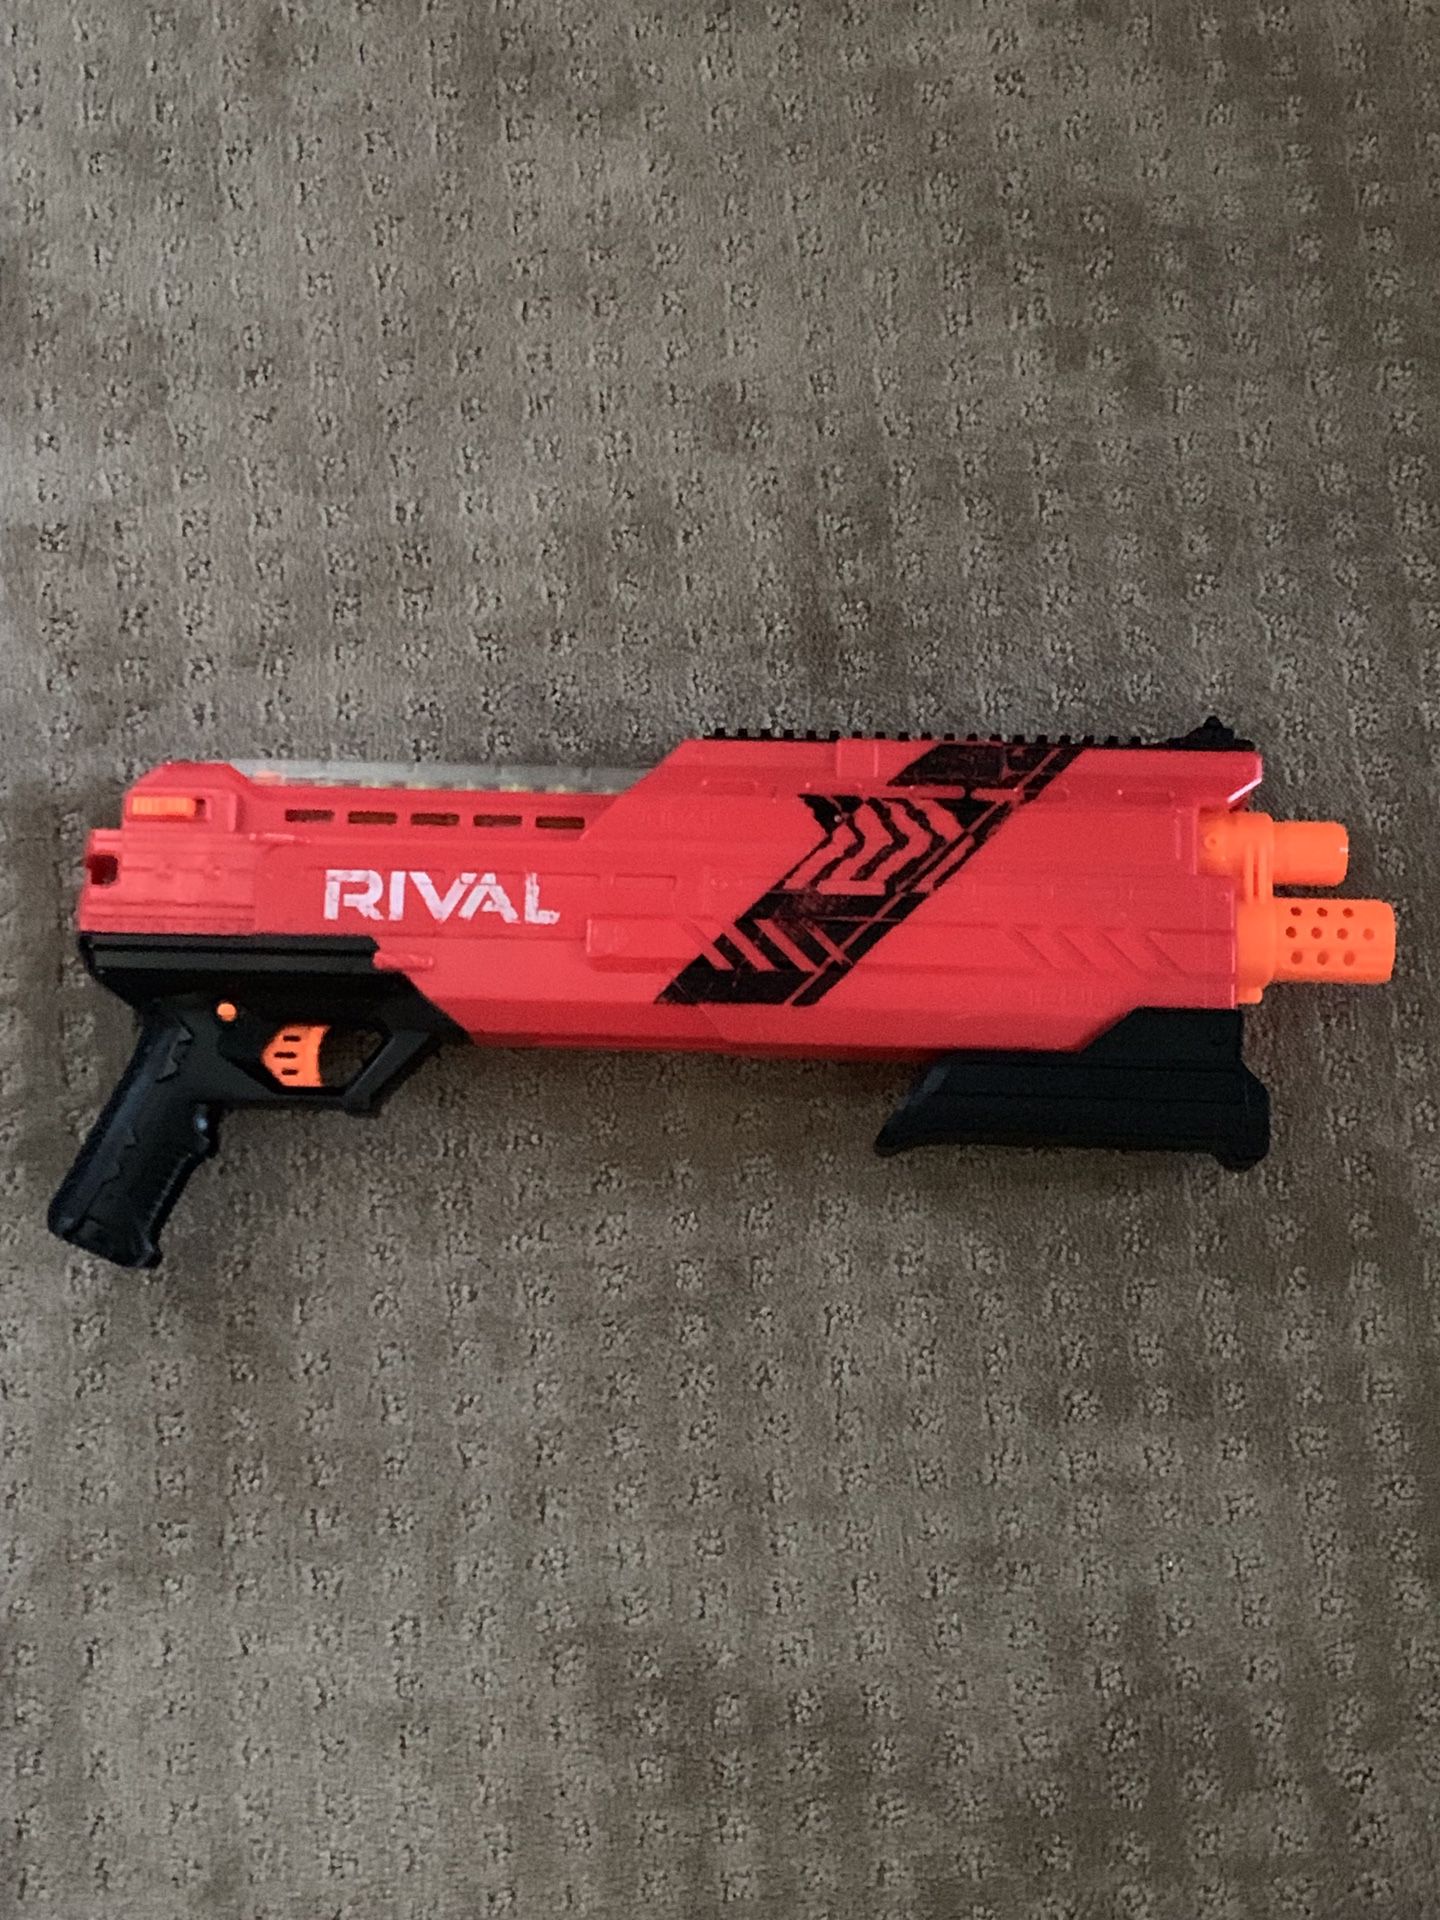 Nerf Rival XVI-1200 shotgun